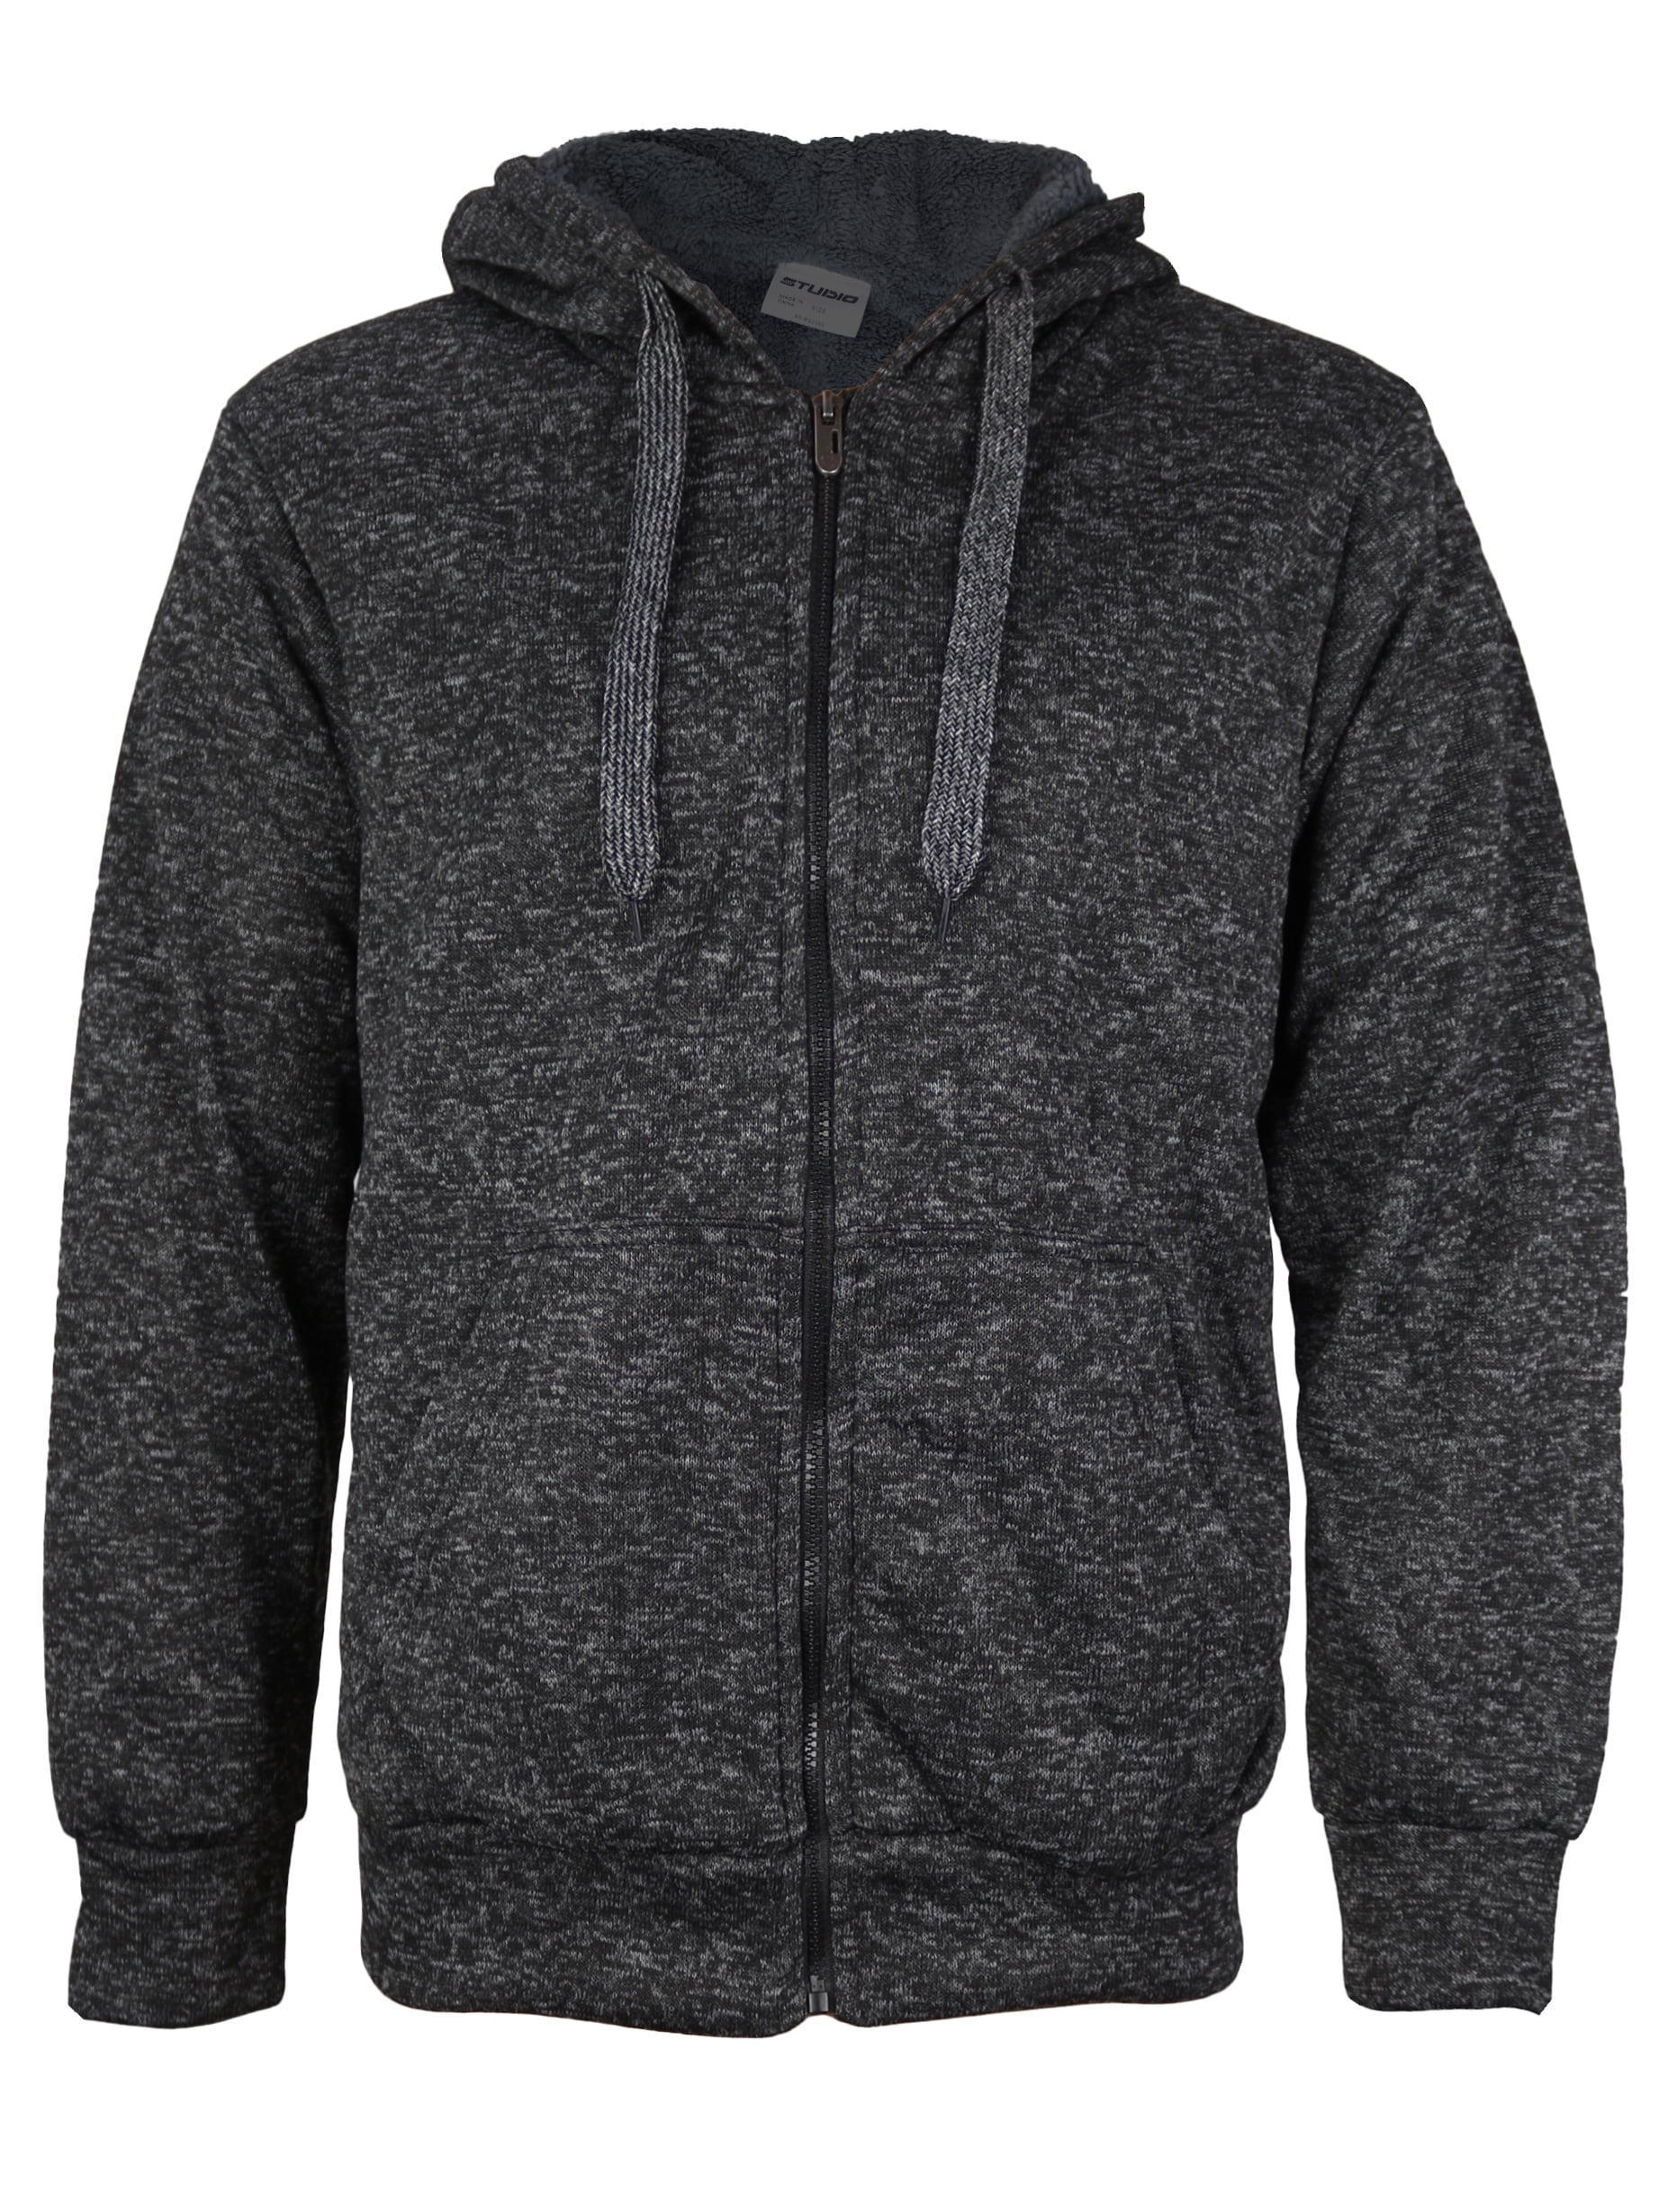 vkwear Boys Kids Athletic Soft Sherpa Lined Fleece Zip Up Hoodie Sweater Jacket 